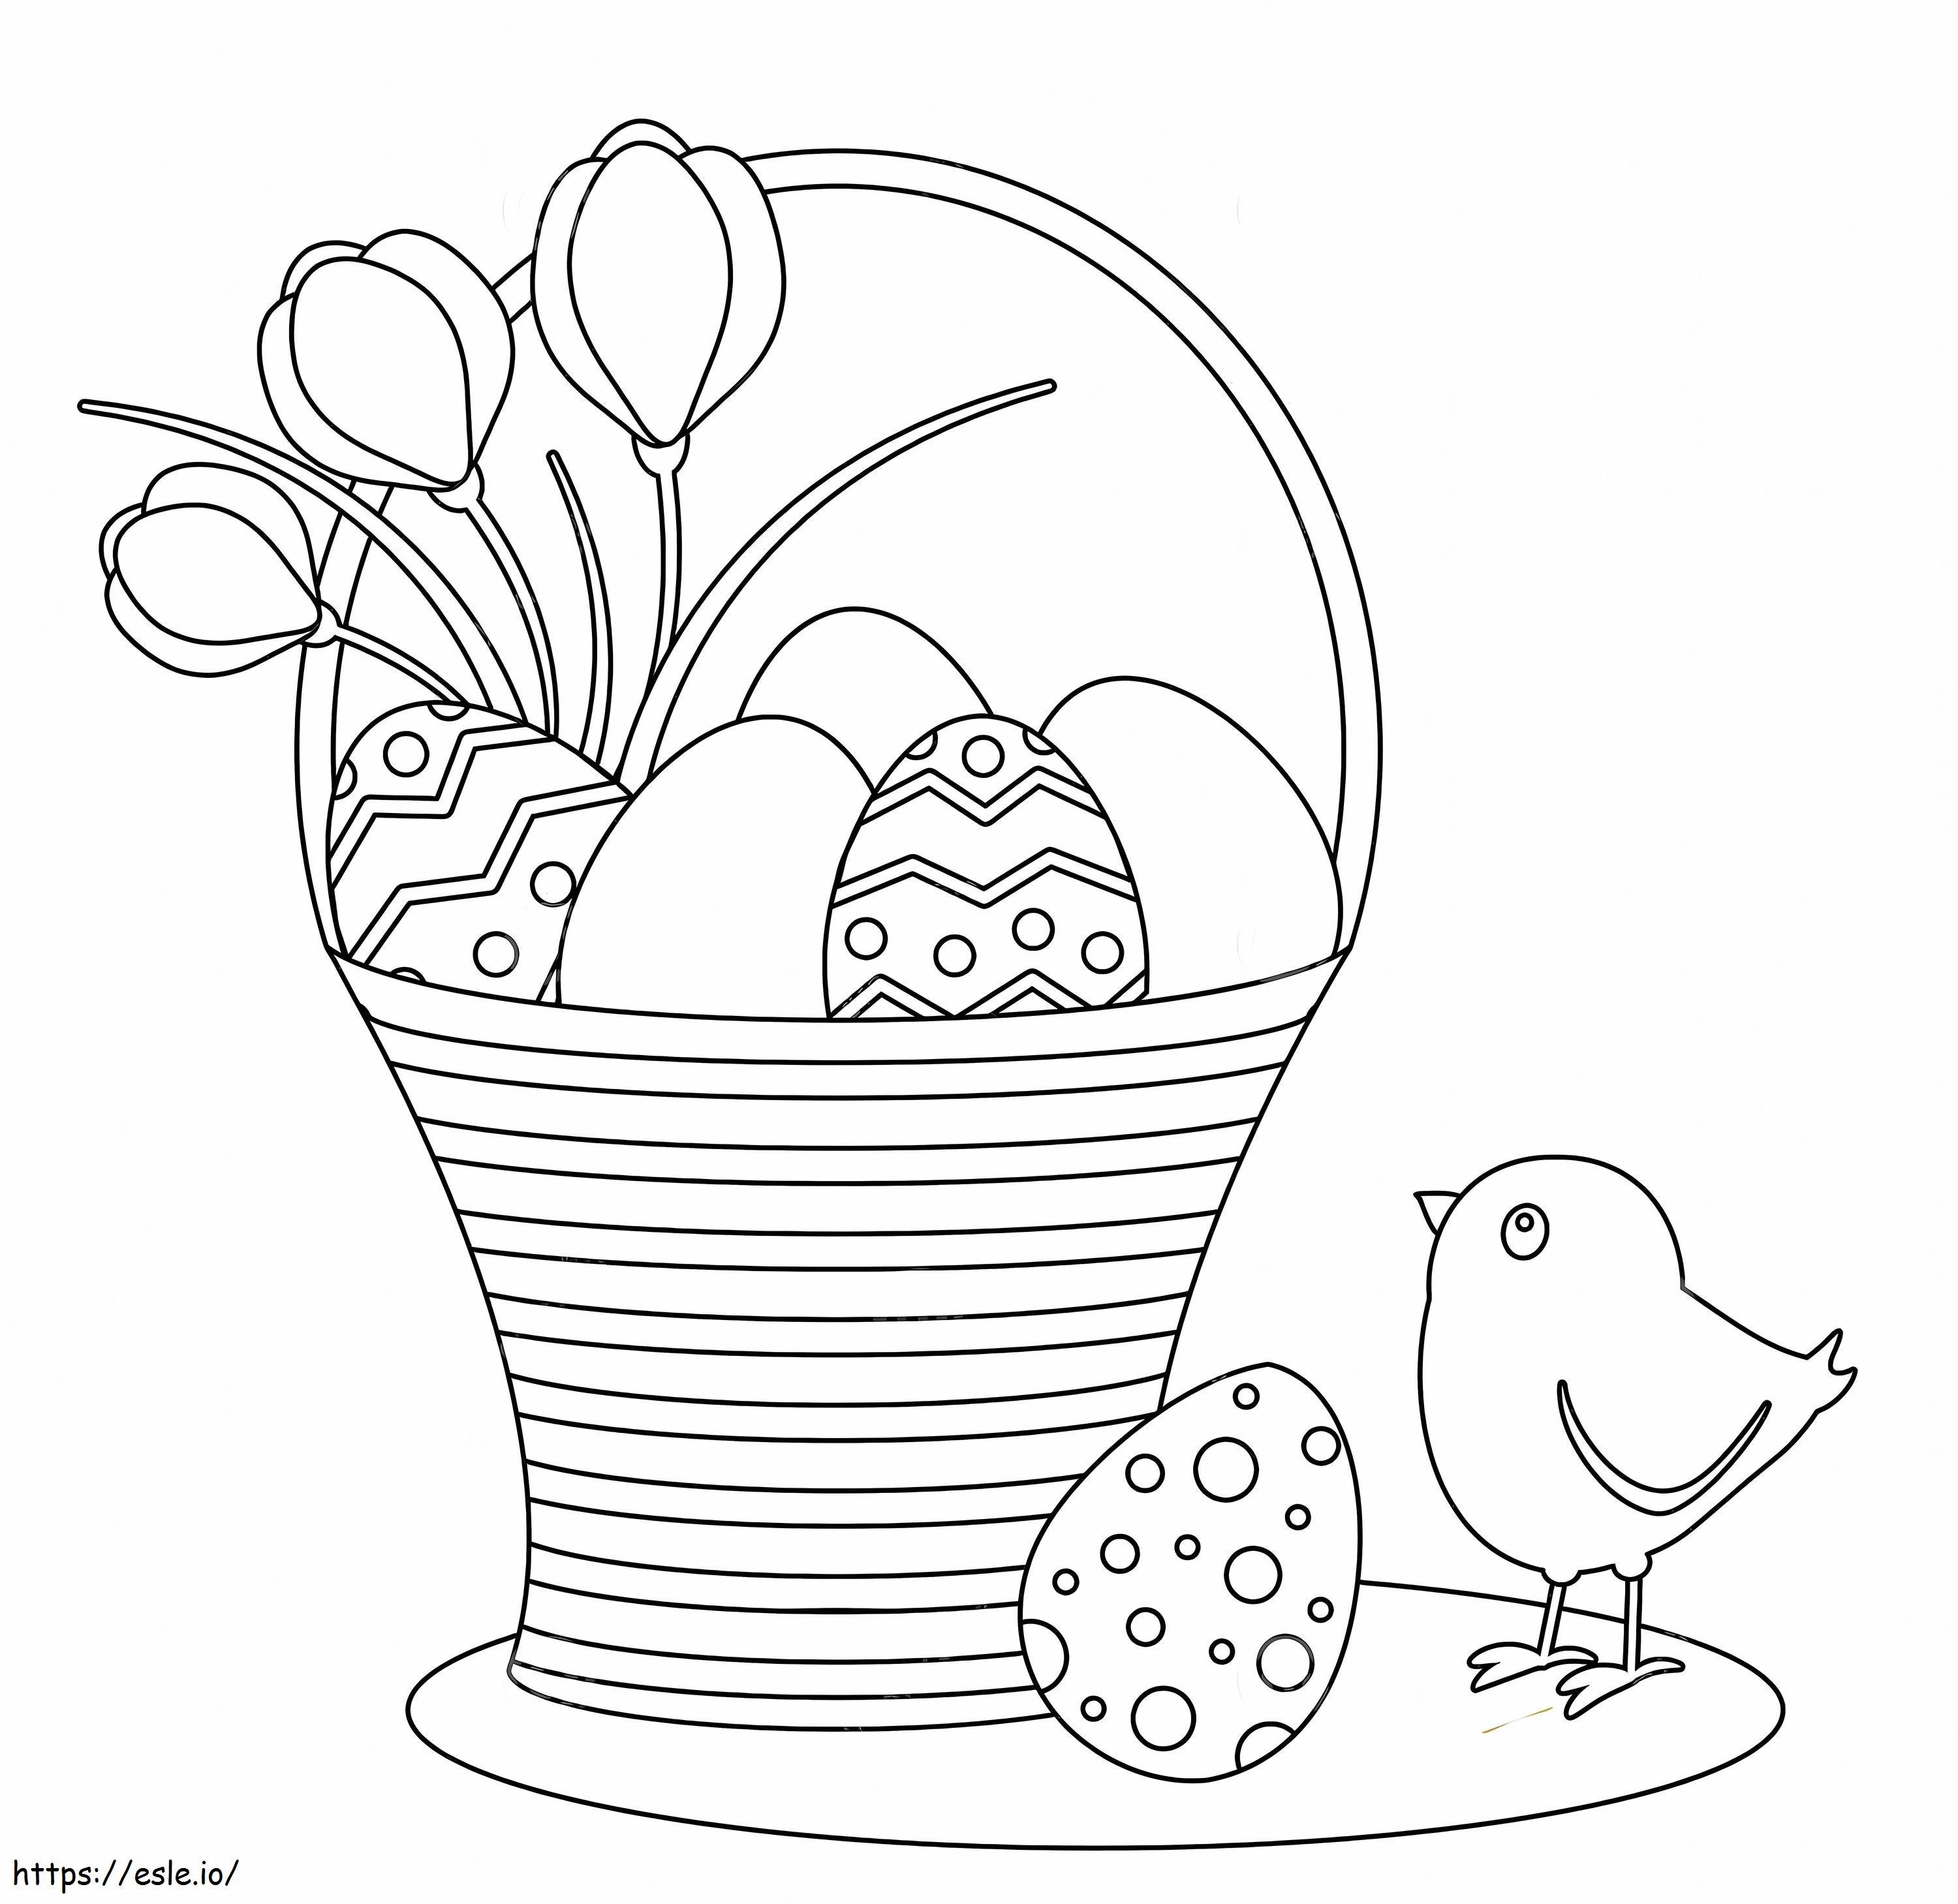 Pulcini E Cestino Dell'uovo Di Pasqua da colorare